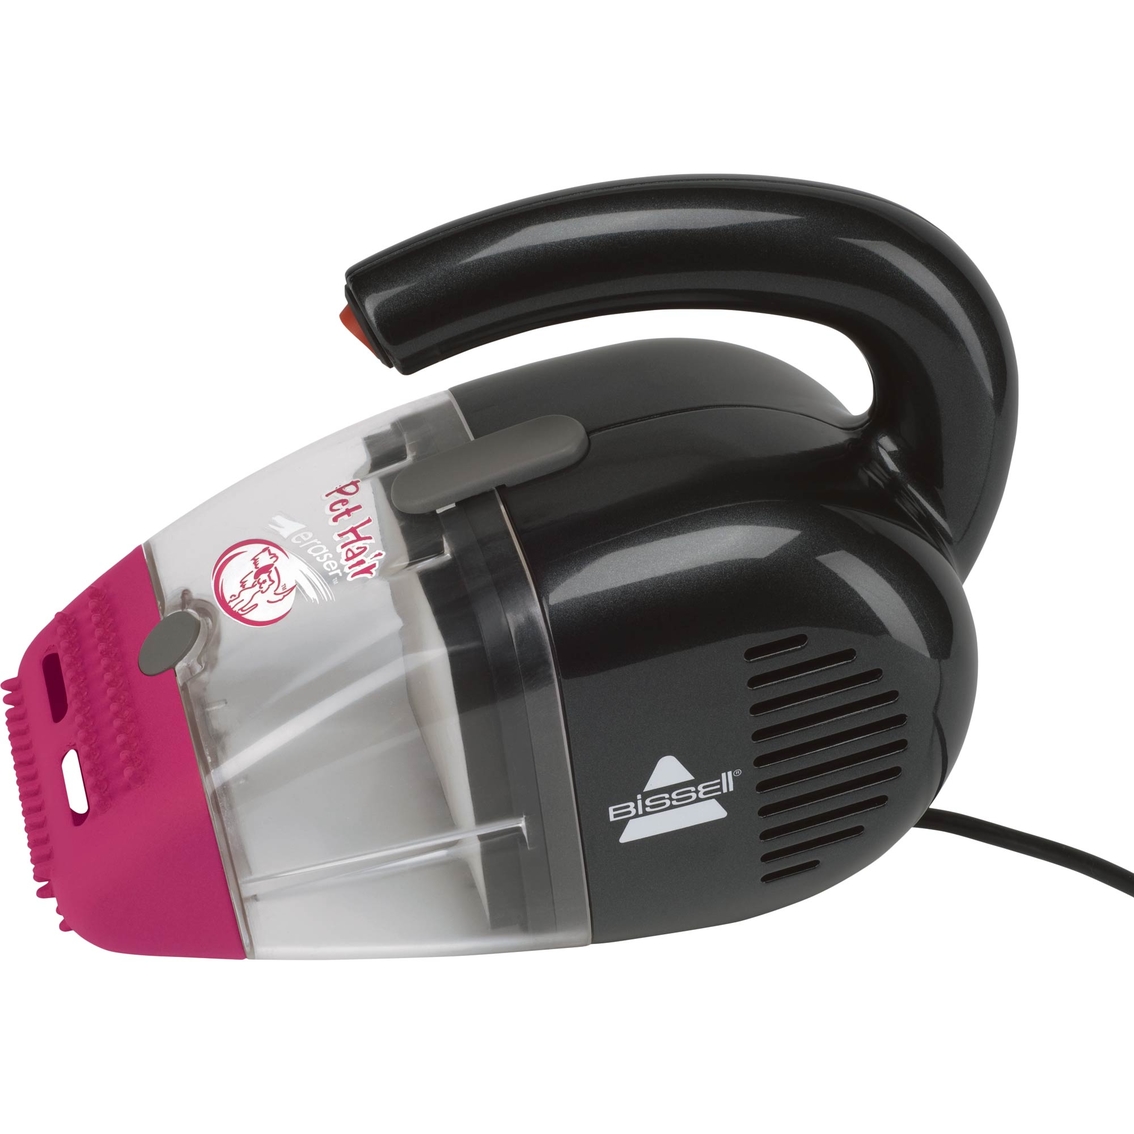 Bissell Pet Hair Eraser Corded Handheld Vacuum - Image 4 of 4